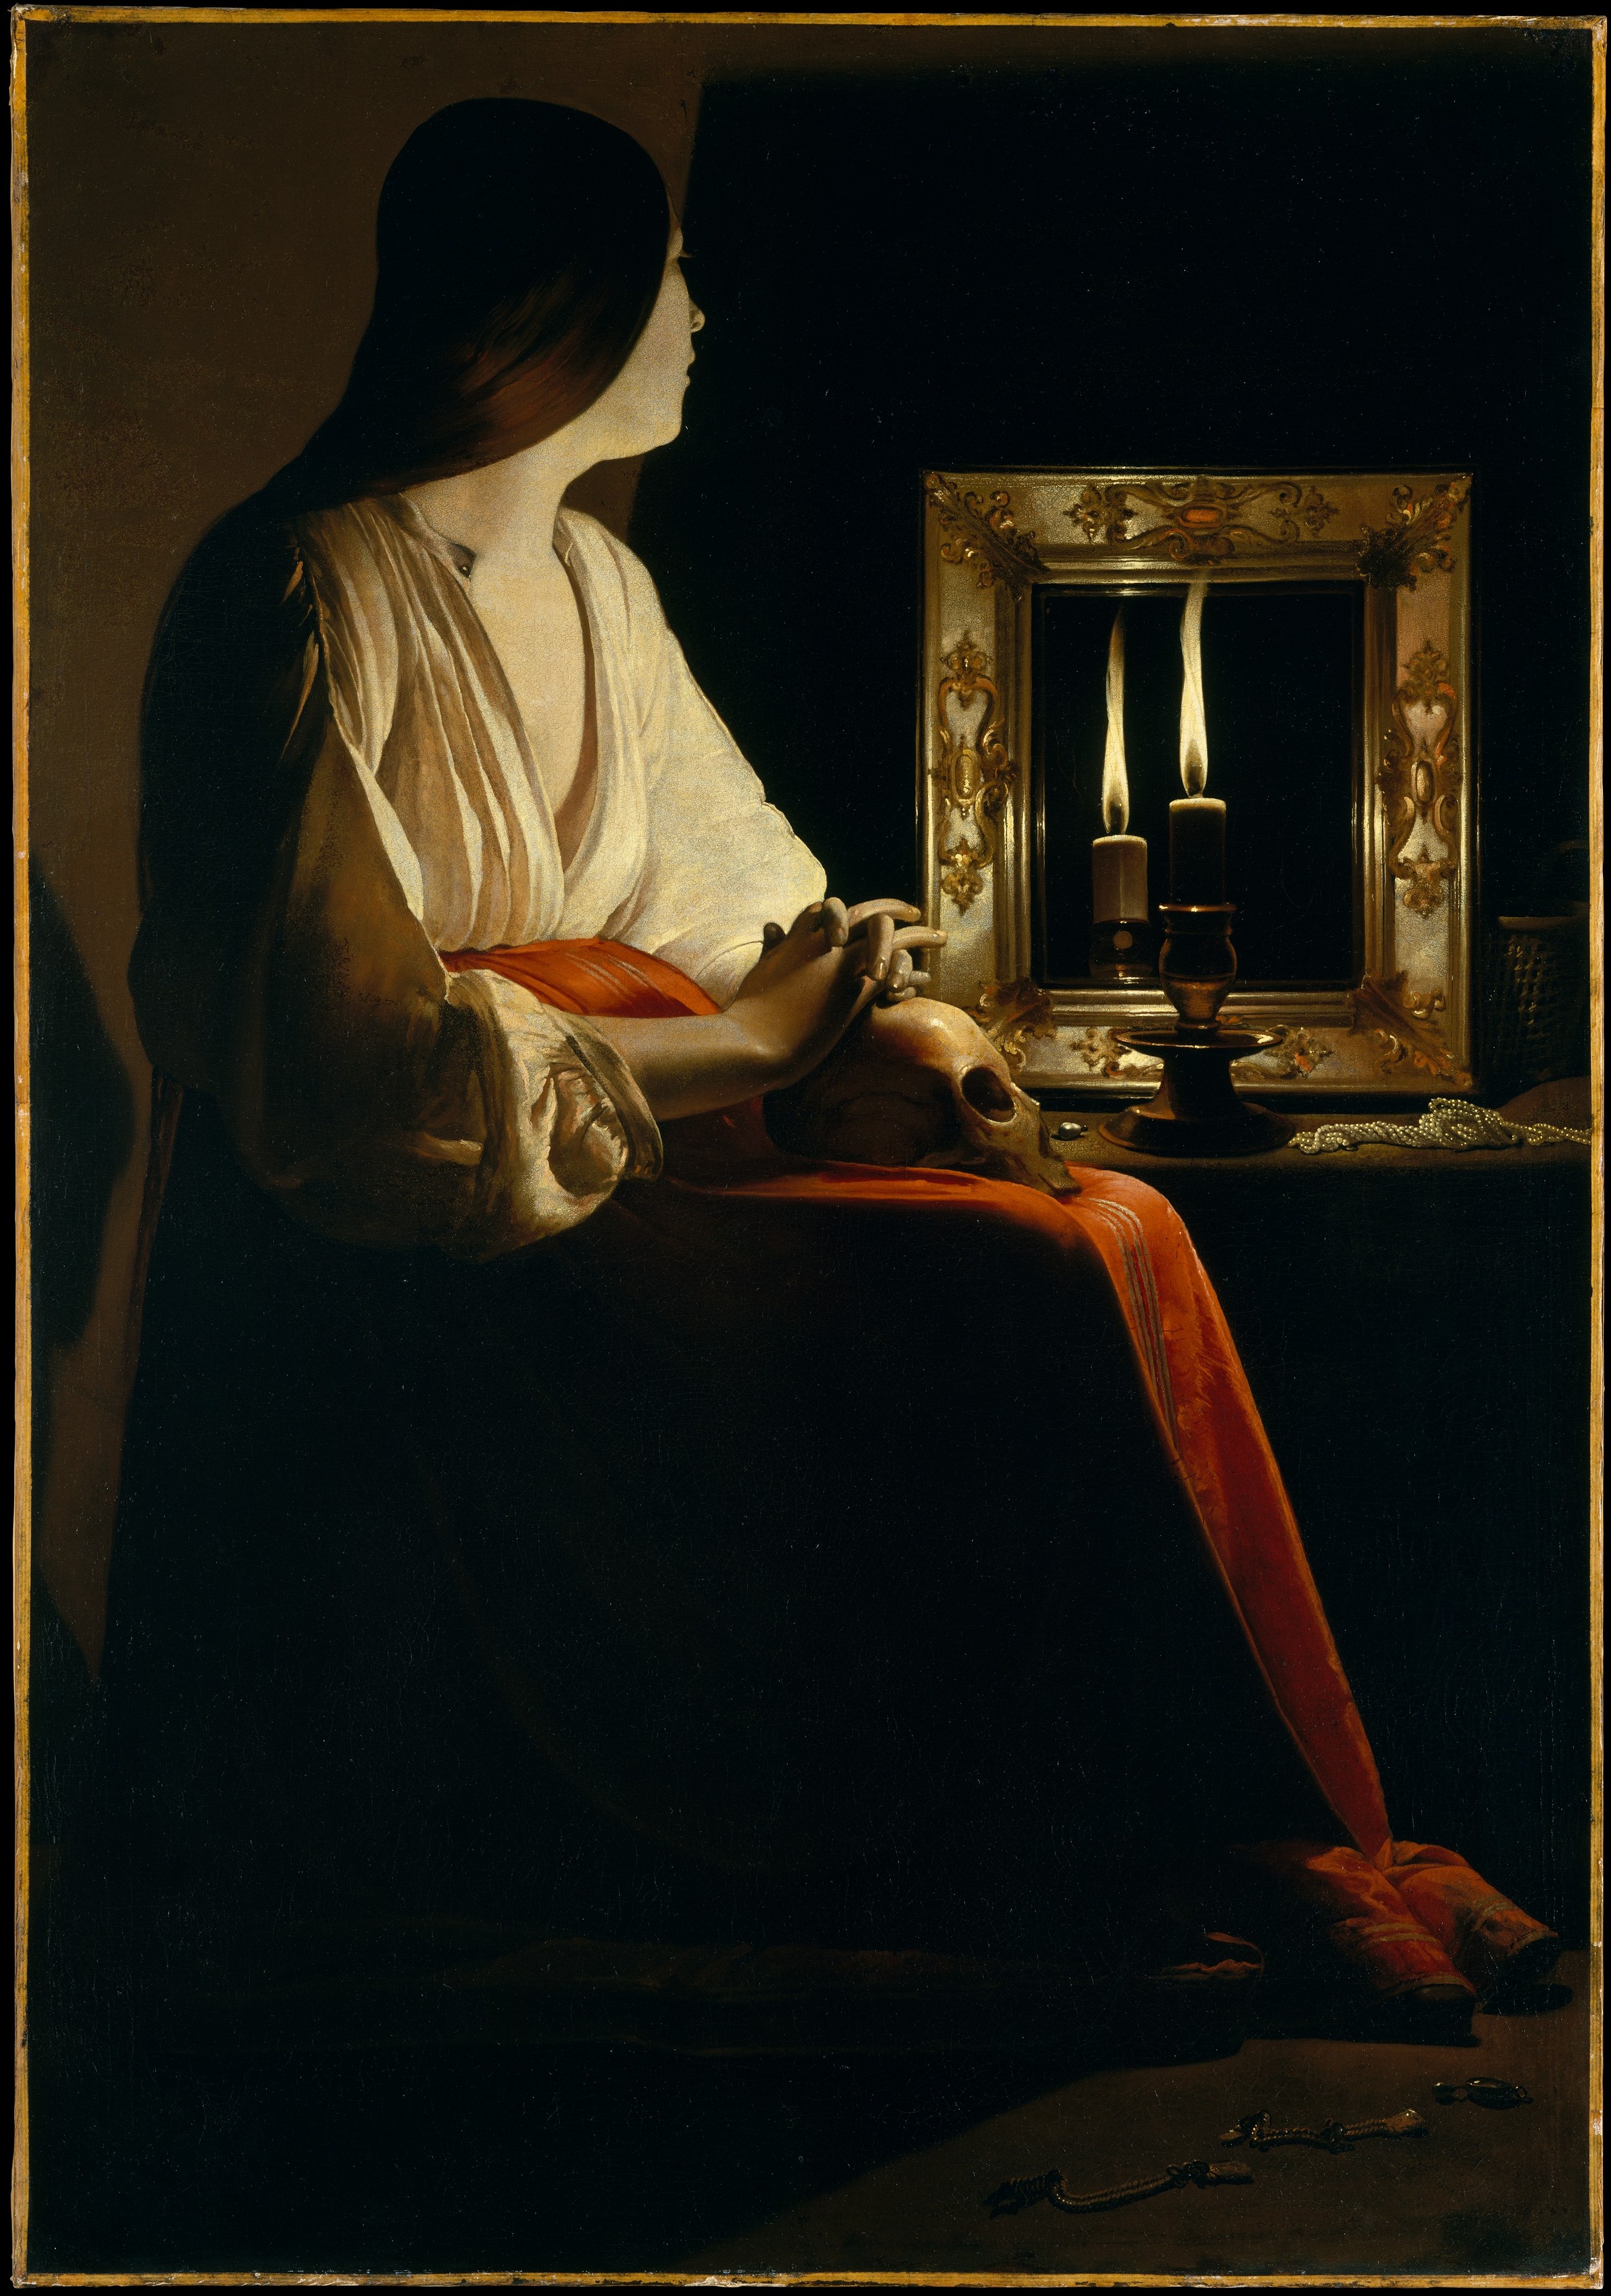 Inspiration: “The Penitent Magdalene,” by Georges de La Tour